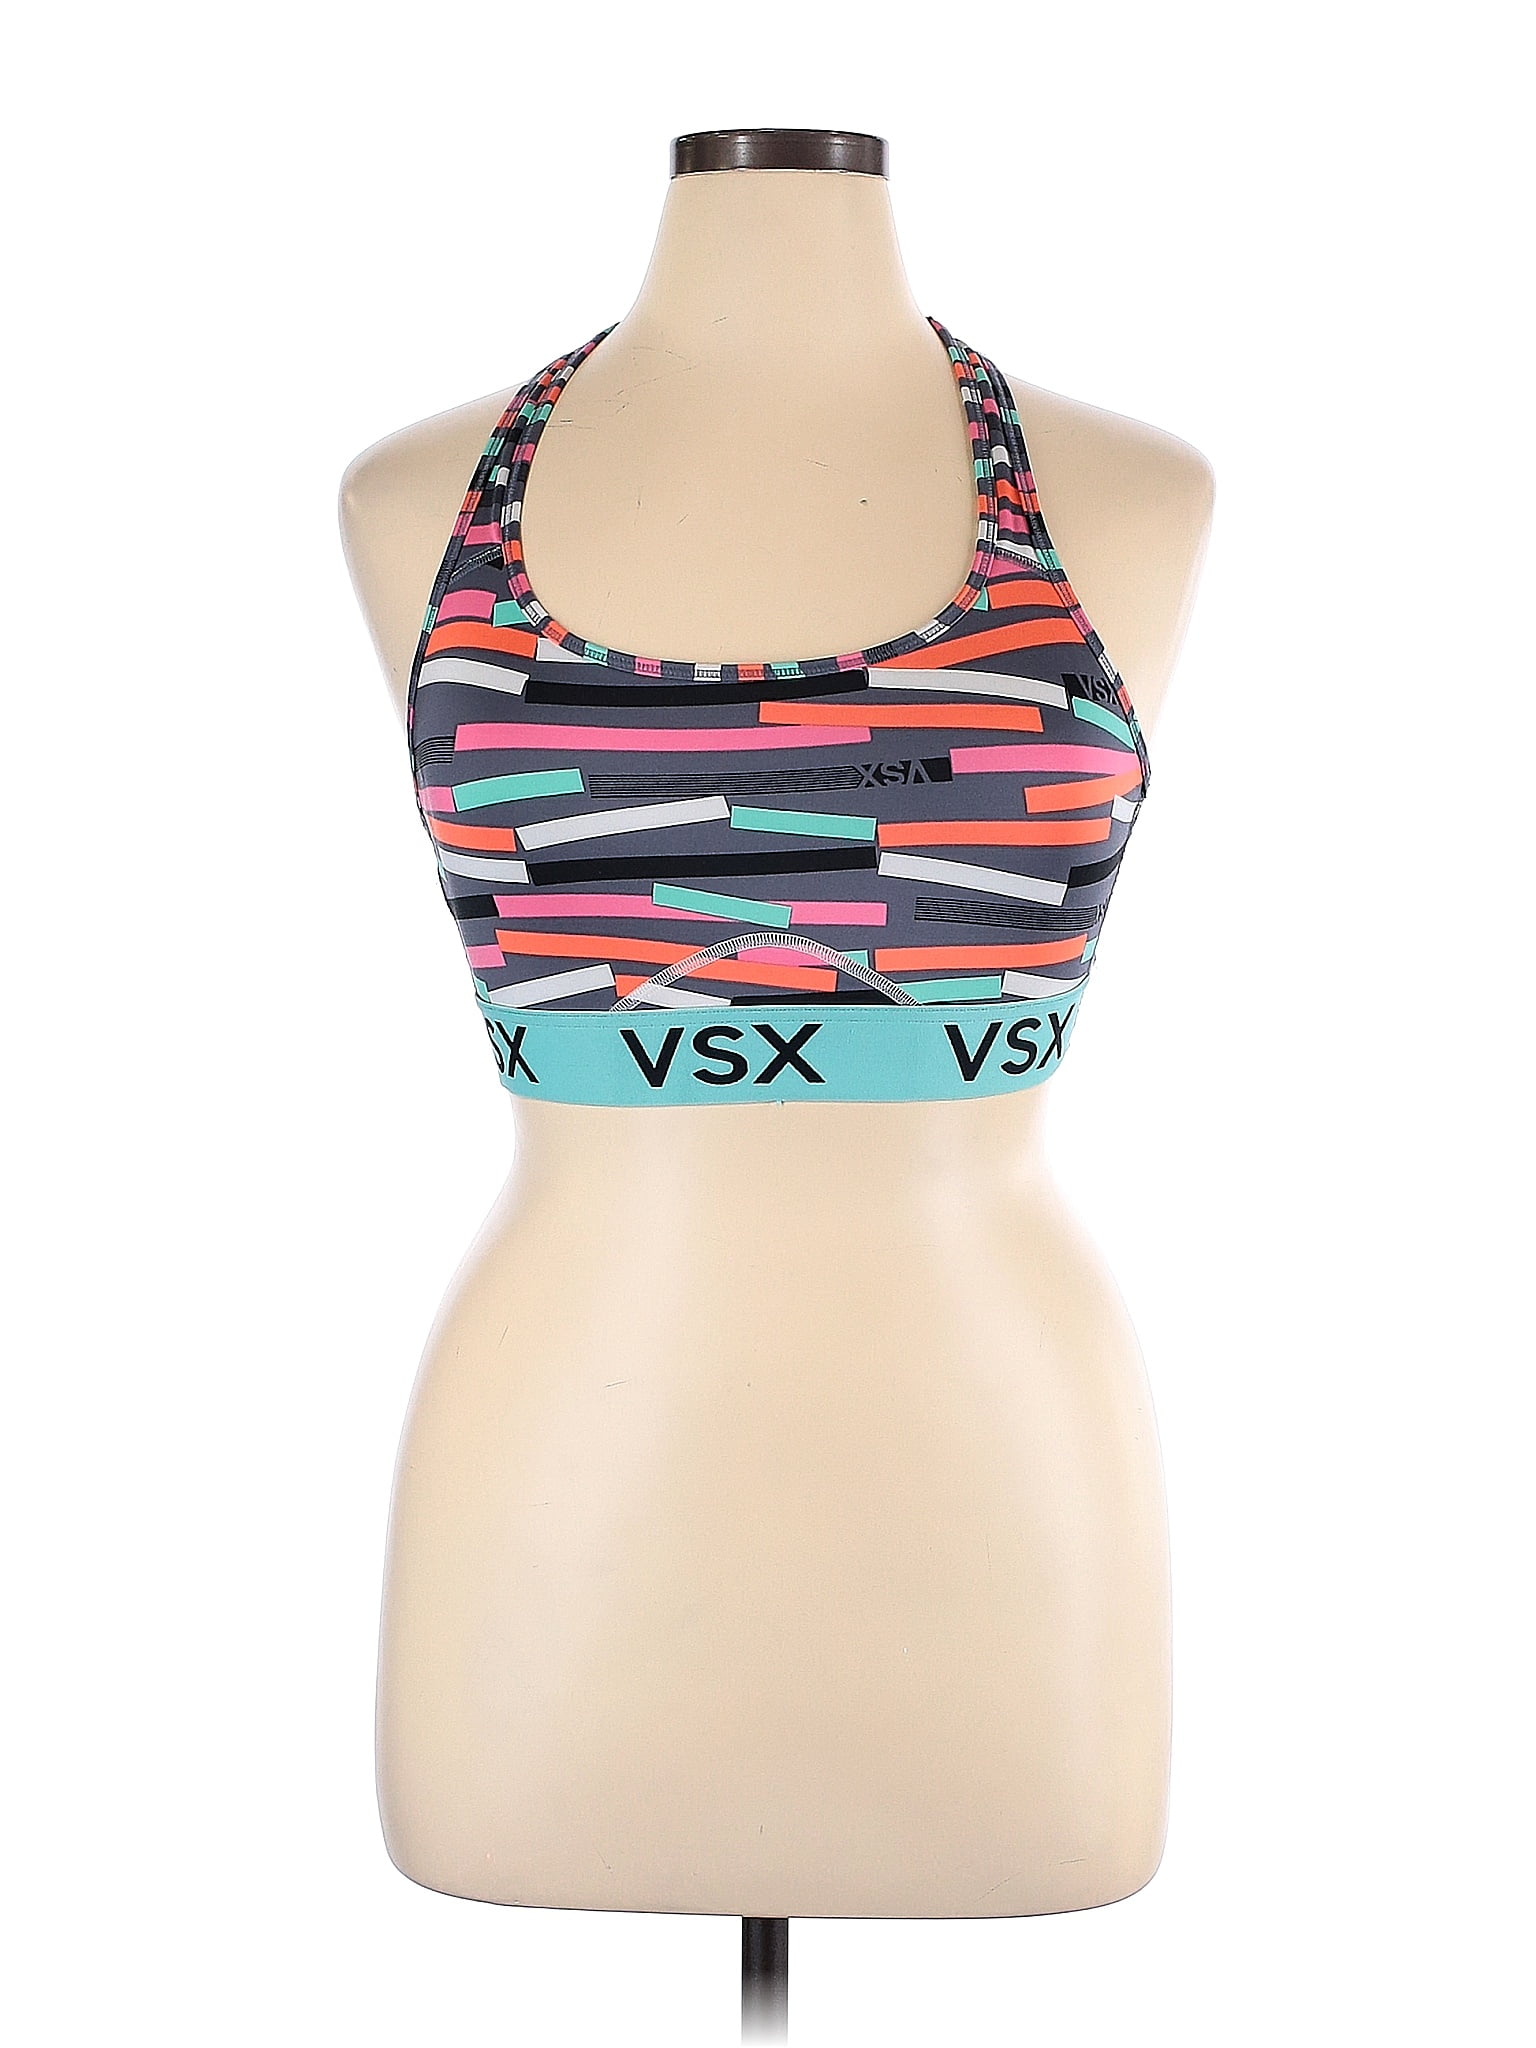 Victoria's Secret VSX The Player Racerback Sport Bra Size Small for